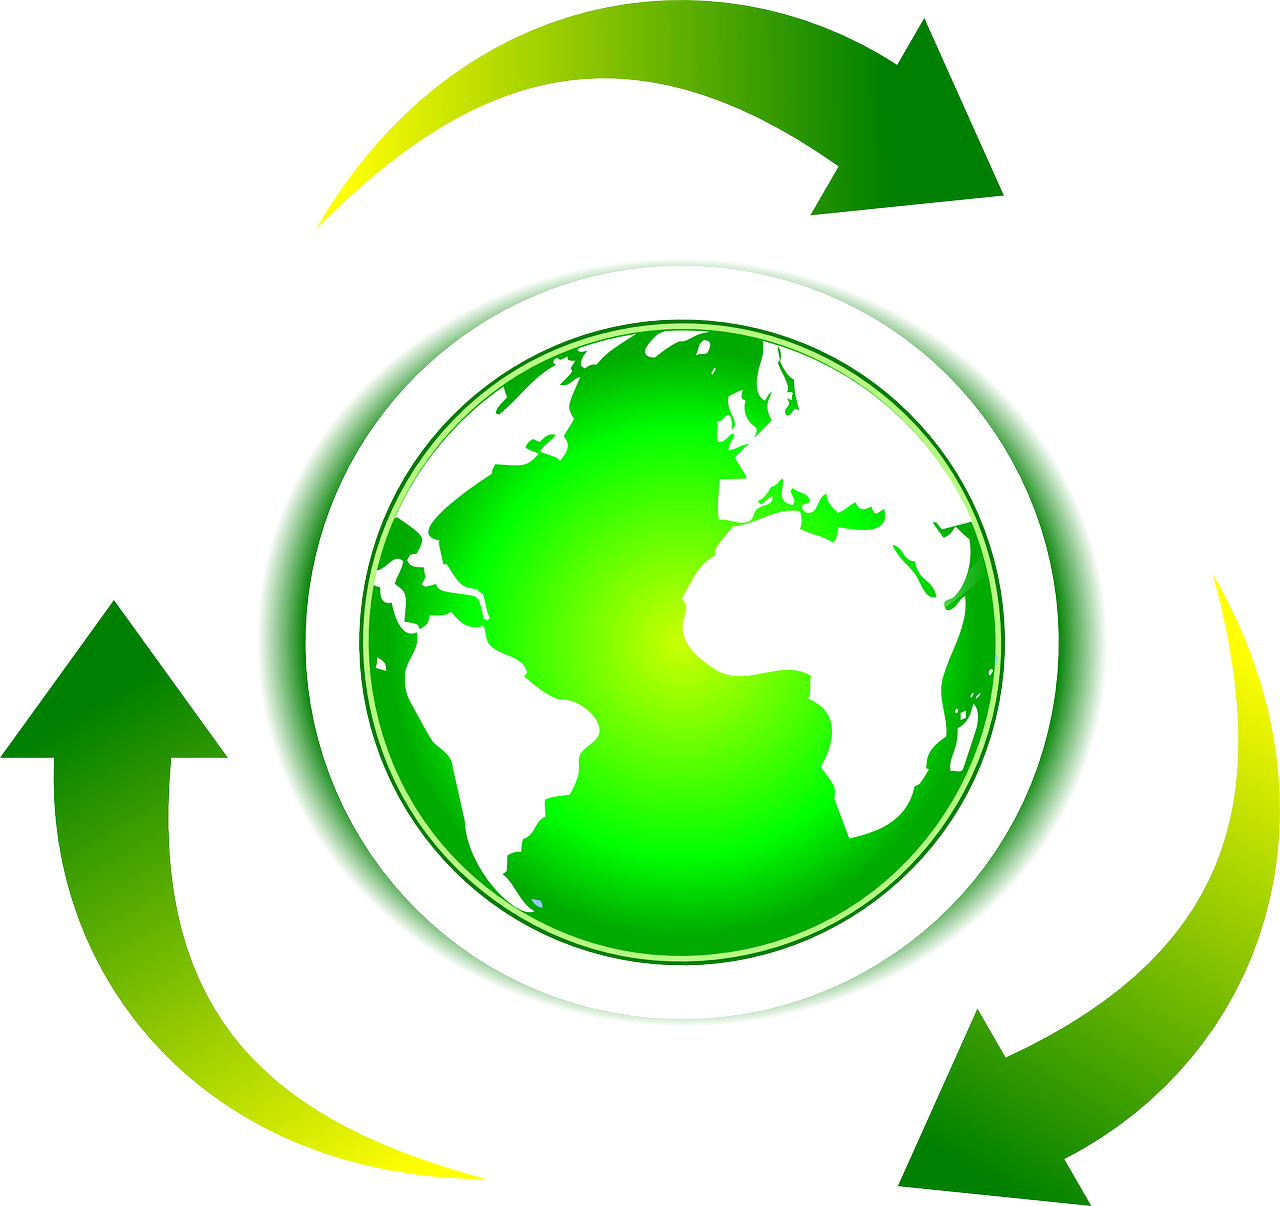 Free image on pixabay. Energy clipart ecological